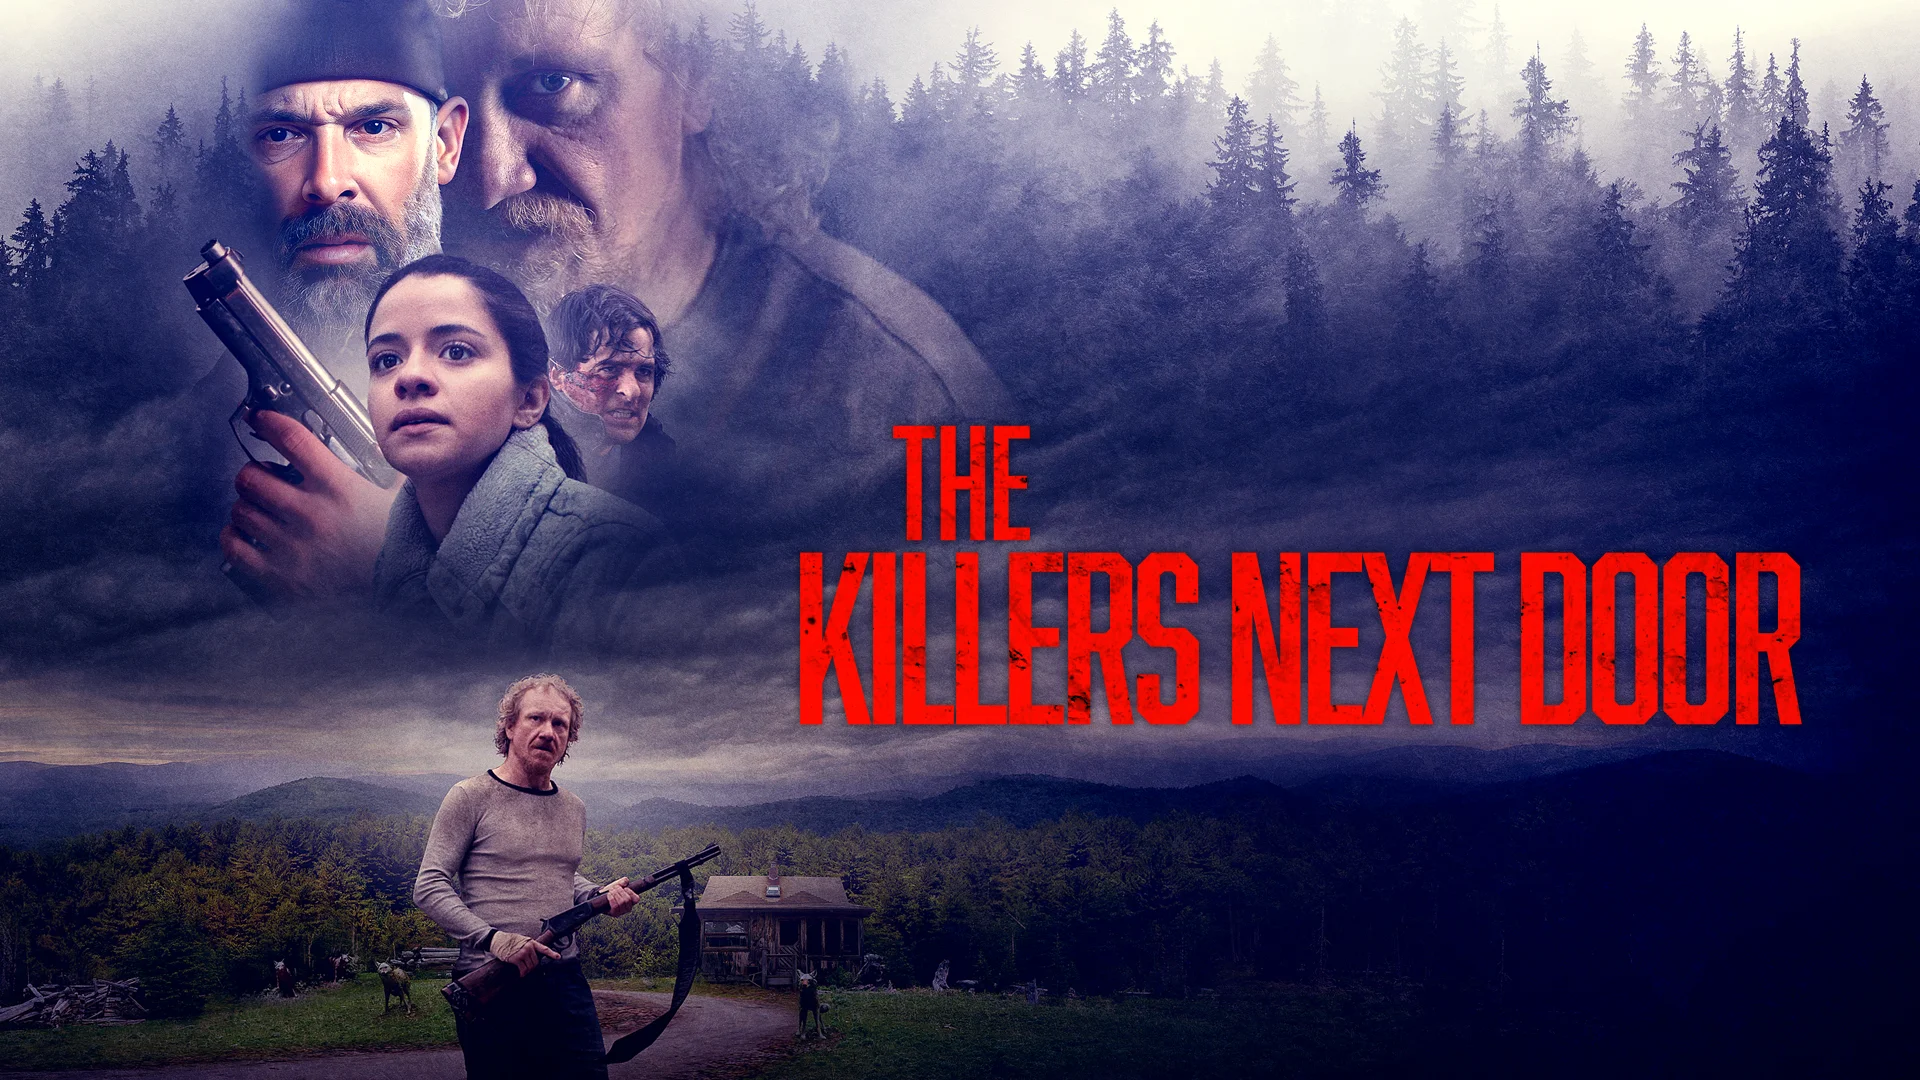 Deskpop Trailers - The Killers Next Door - Trailer on Vimeo